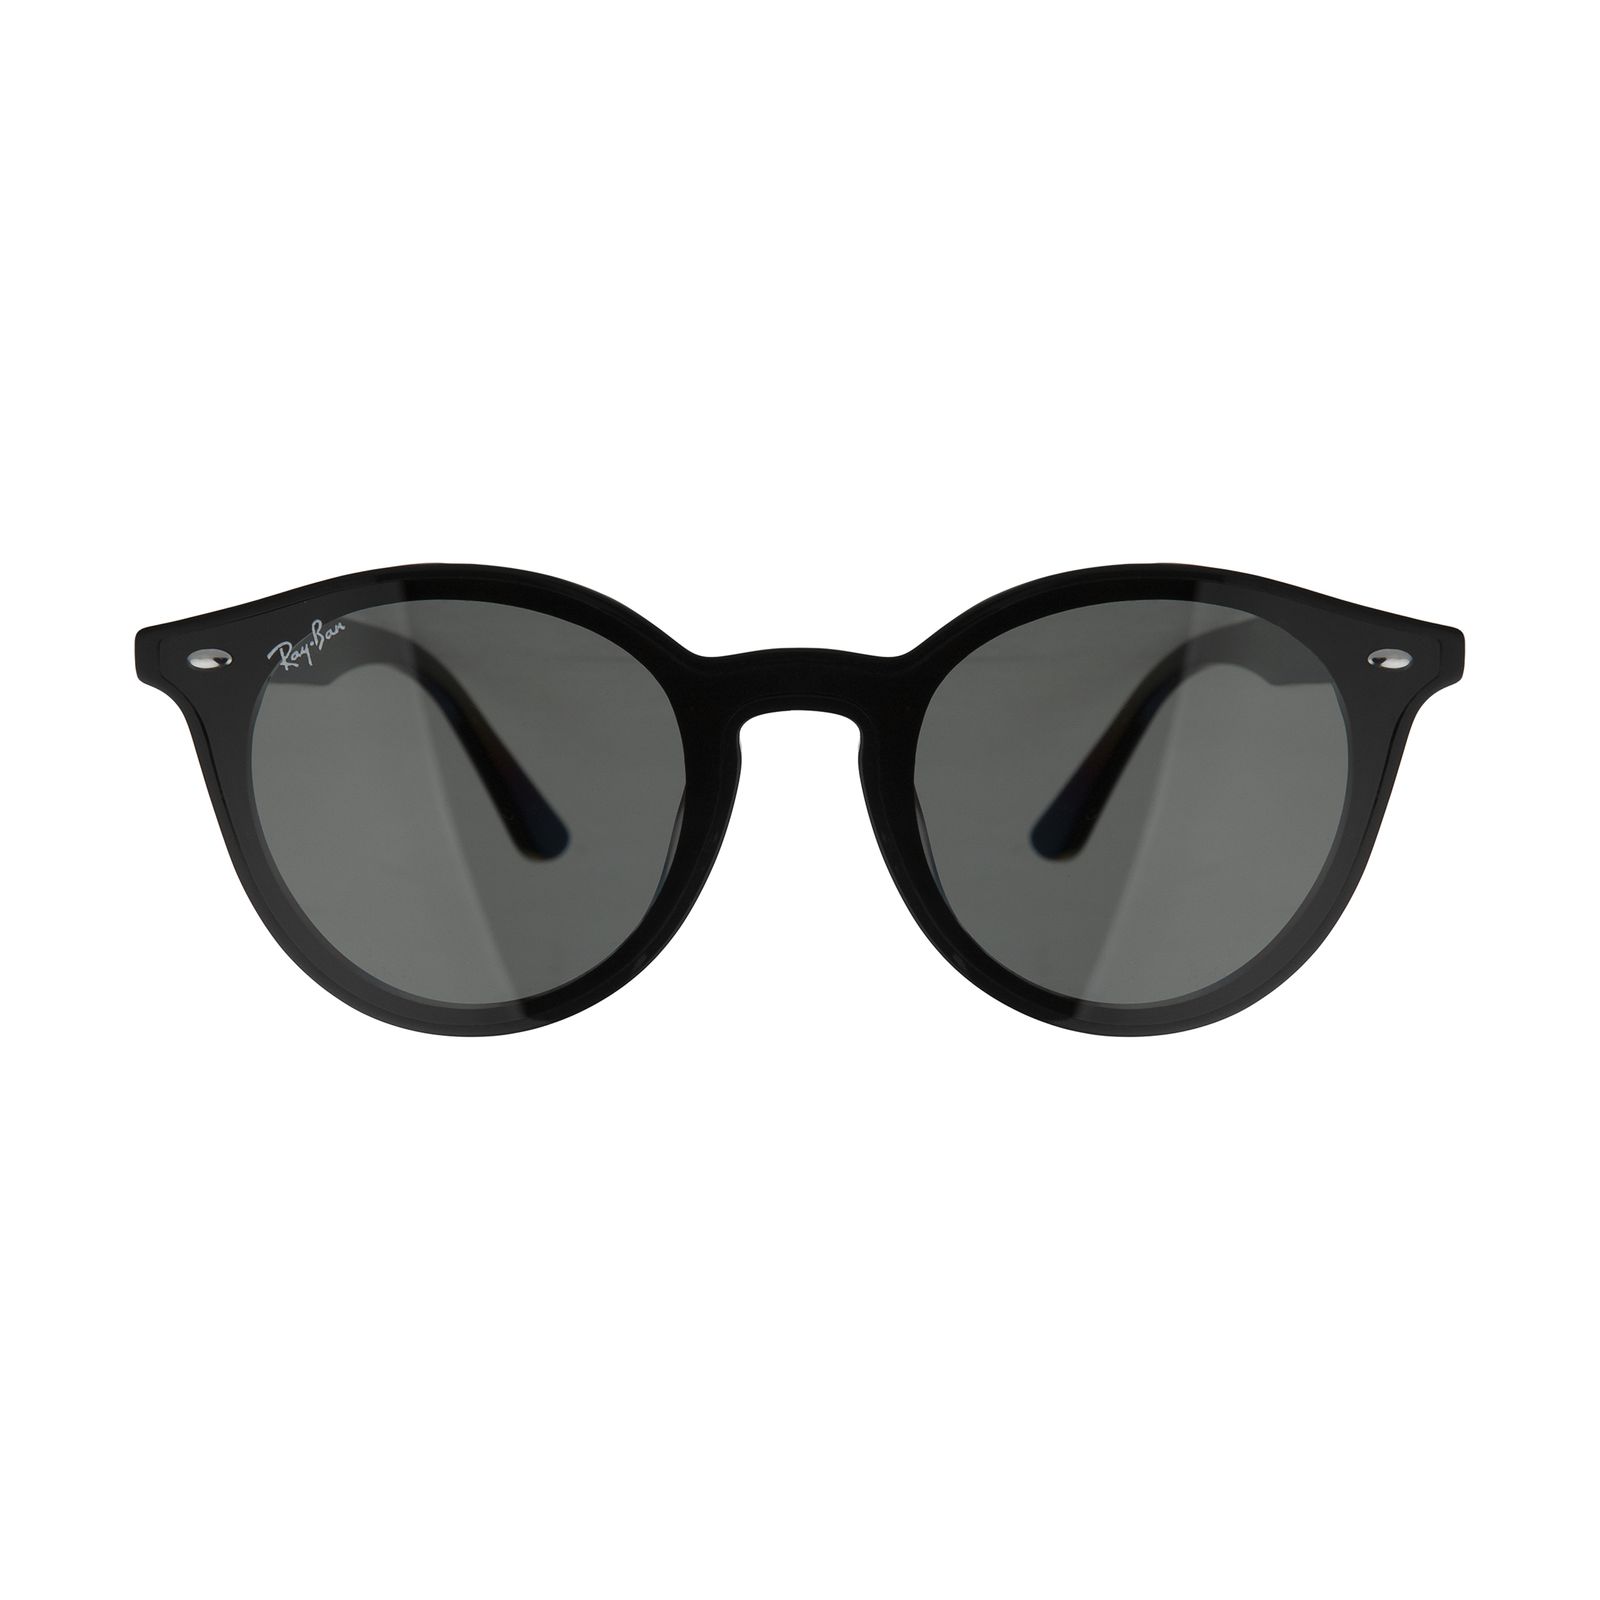 عینک آفتابی ری بن مدل 4380 601/71 39 -  - 1